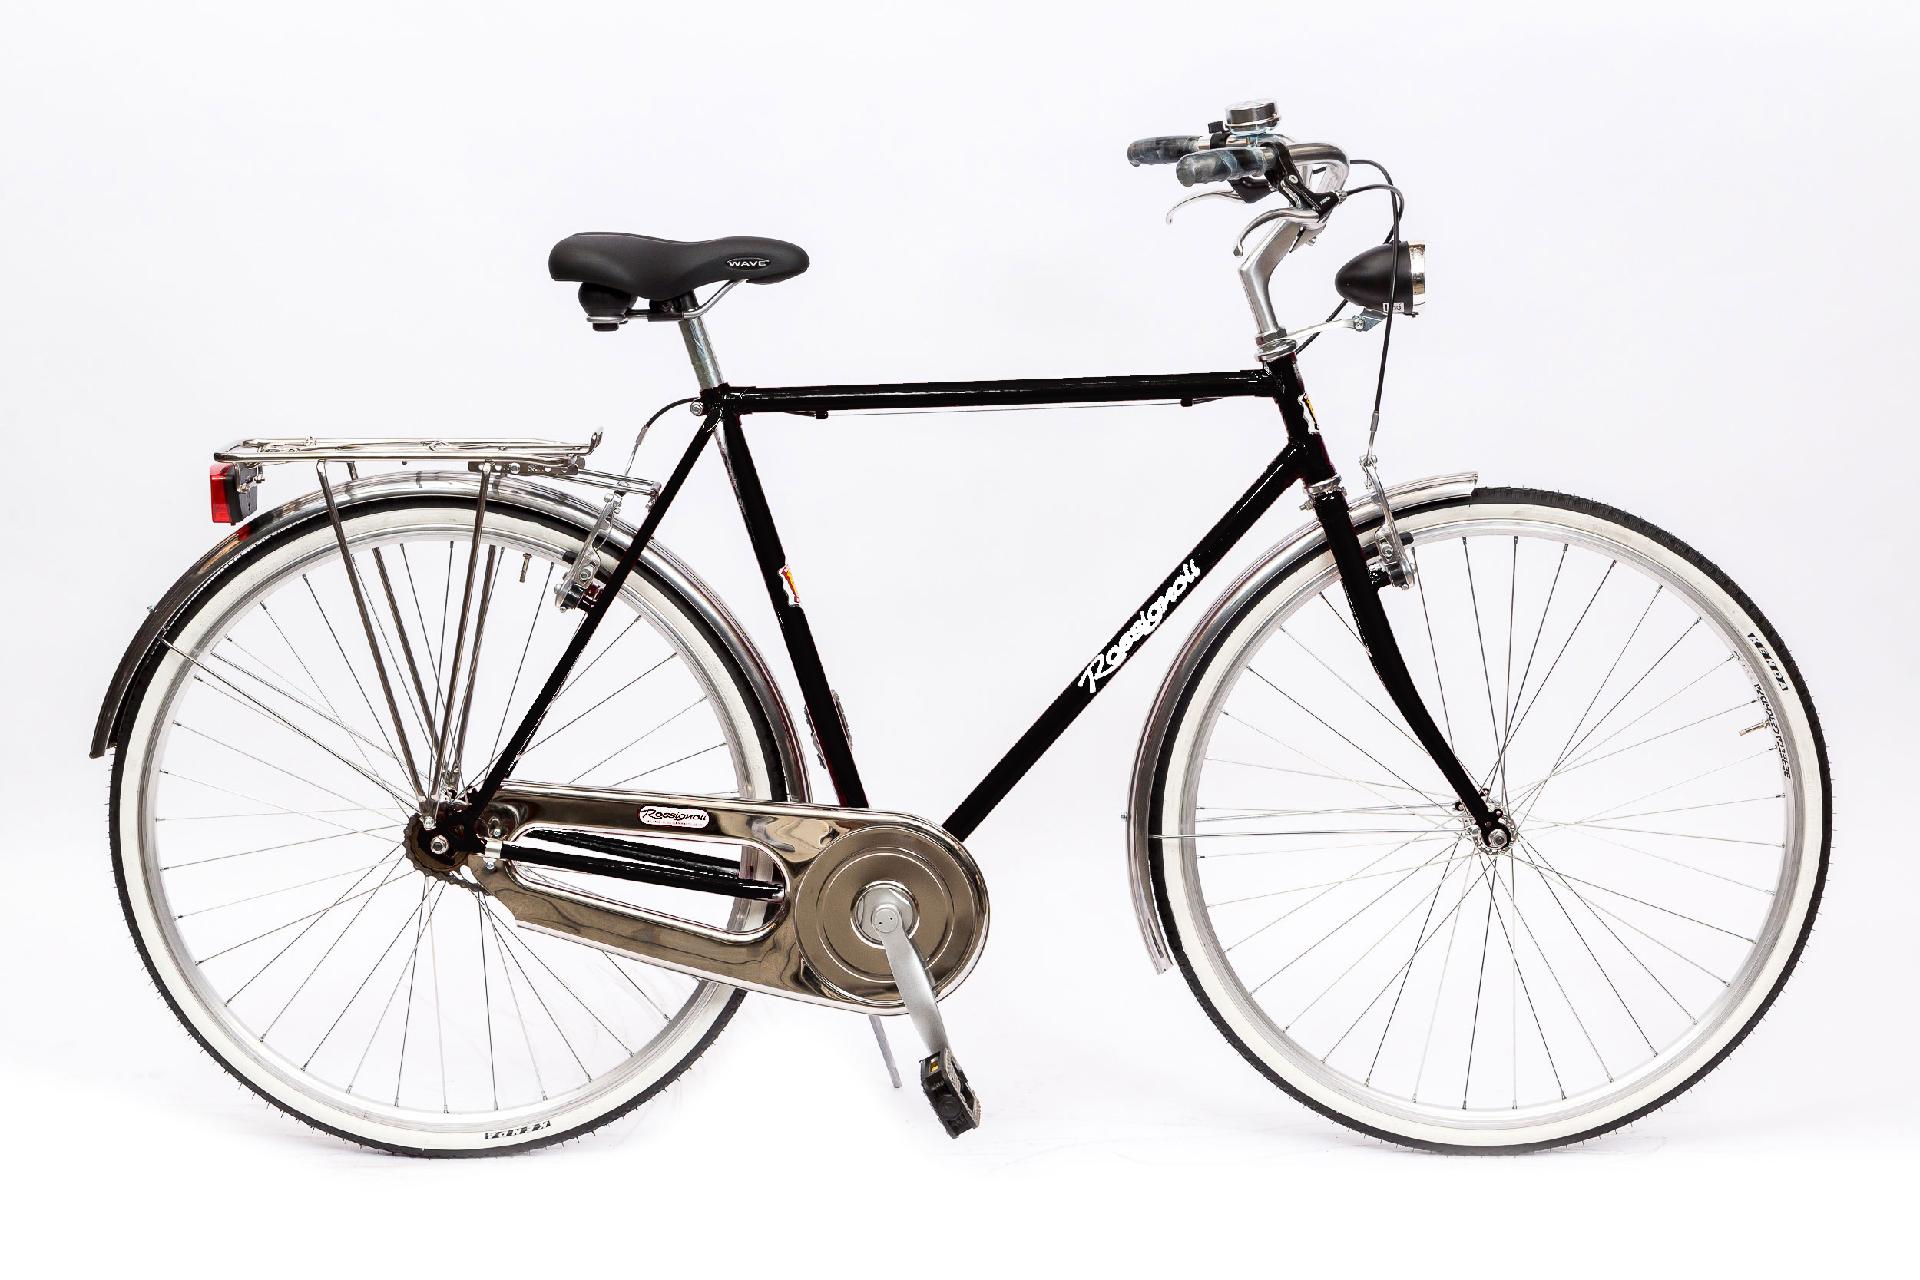 Rossignoli Classica Uomo - Rossignoli, Biciclette a Milano dal 1900